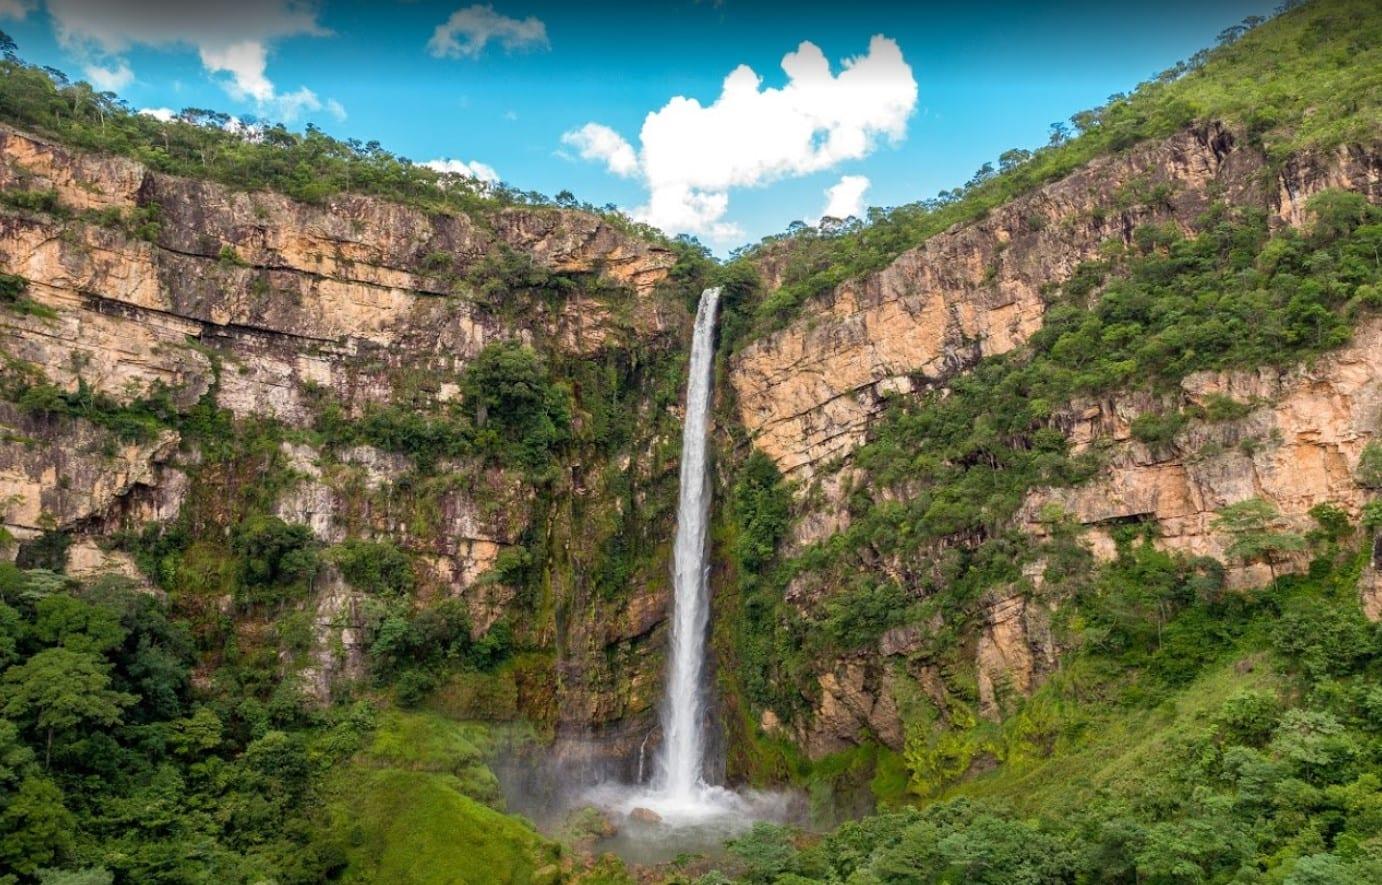 Cachoeiras em Formosa são destinos impressionantes - Dia Online